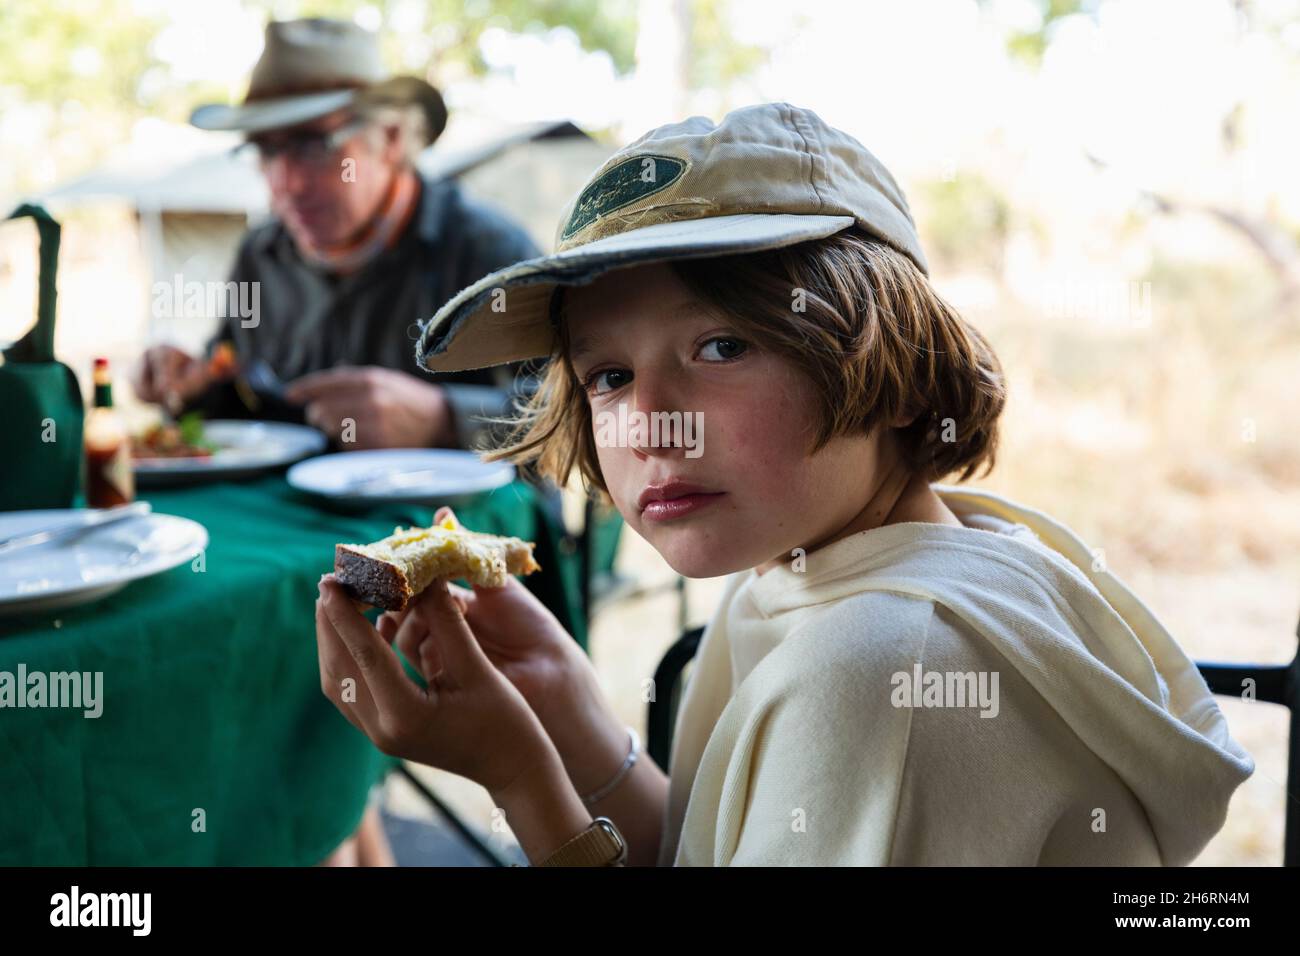 Un jeune garçon mangeant un morceau de pain grillé à une table dans un camp de safari Banque D'Images